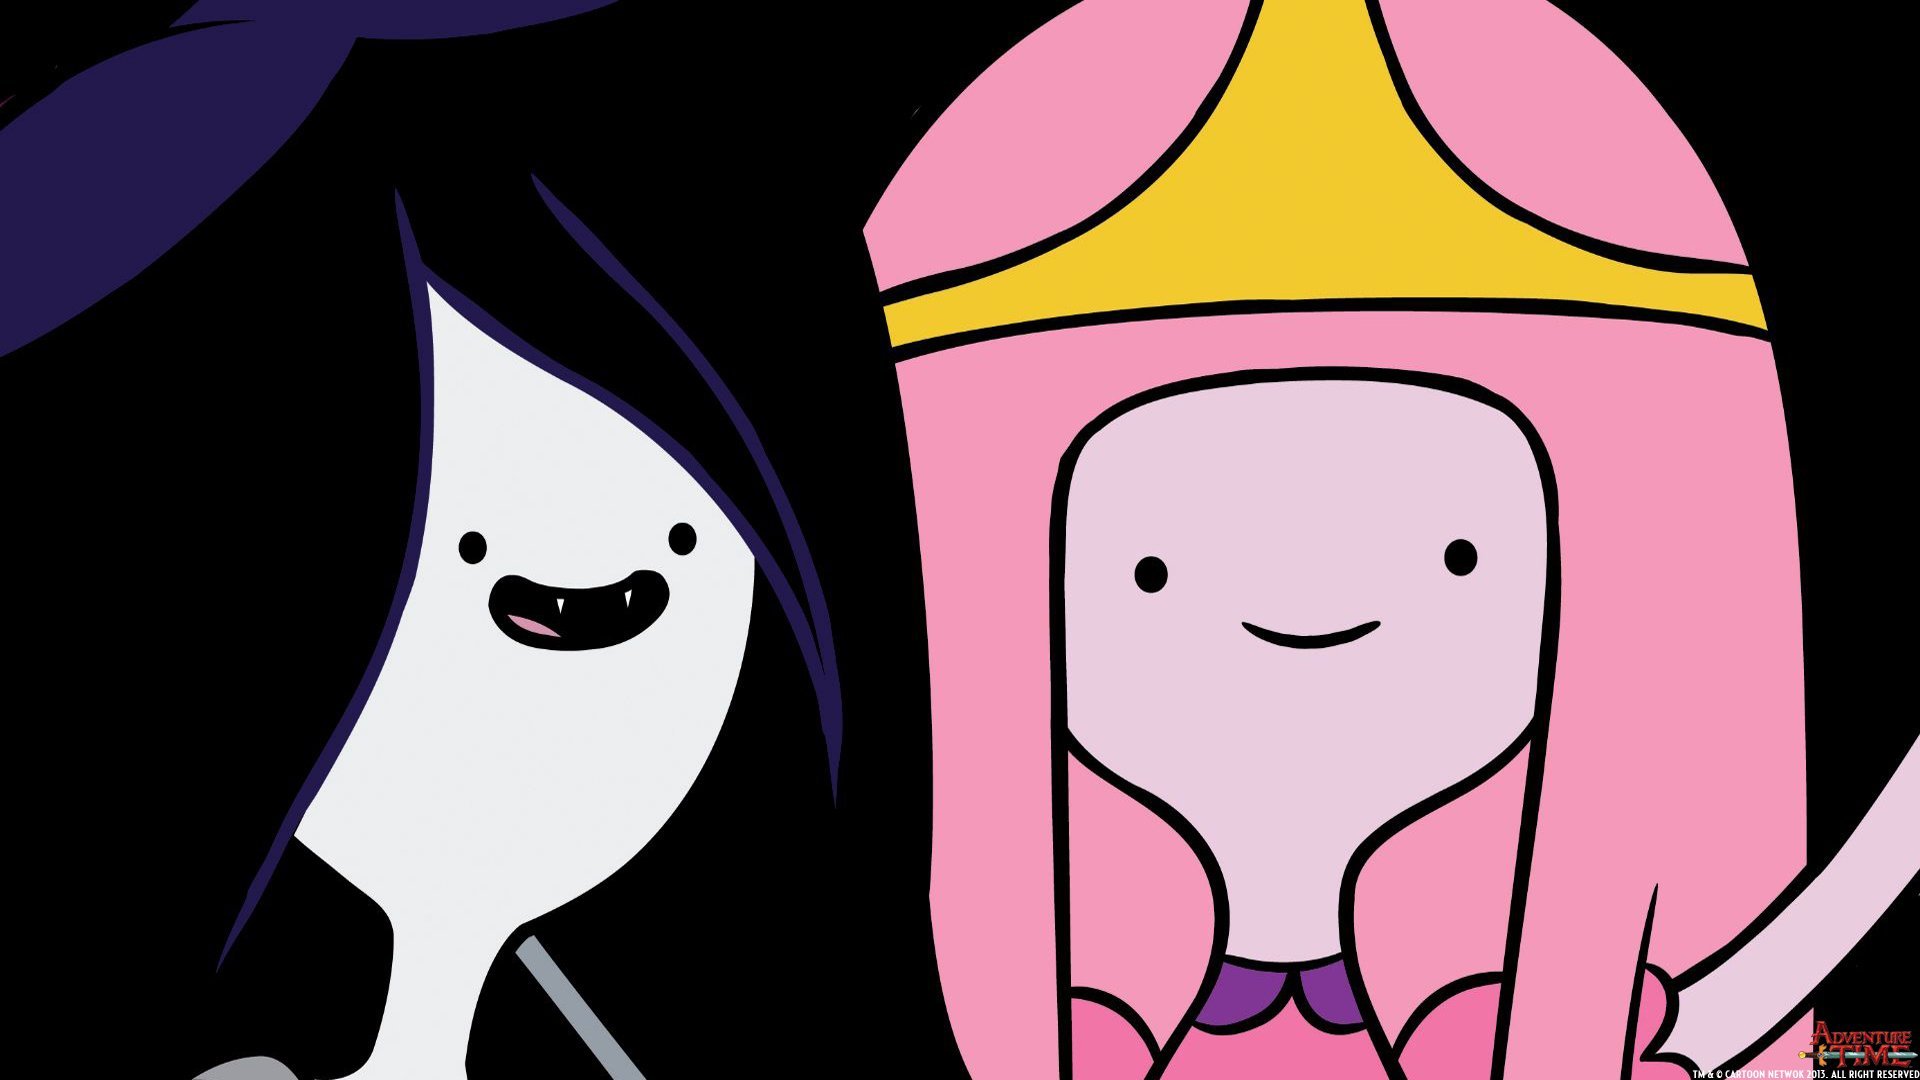 Обои двух лп. Принцесса Бубль ГУМ. Принцесса Бубль ГУМ лицо. Adventure time Марселин. Парные обои для ЛП.